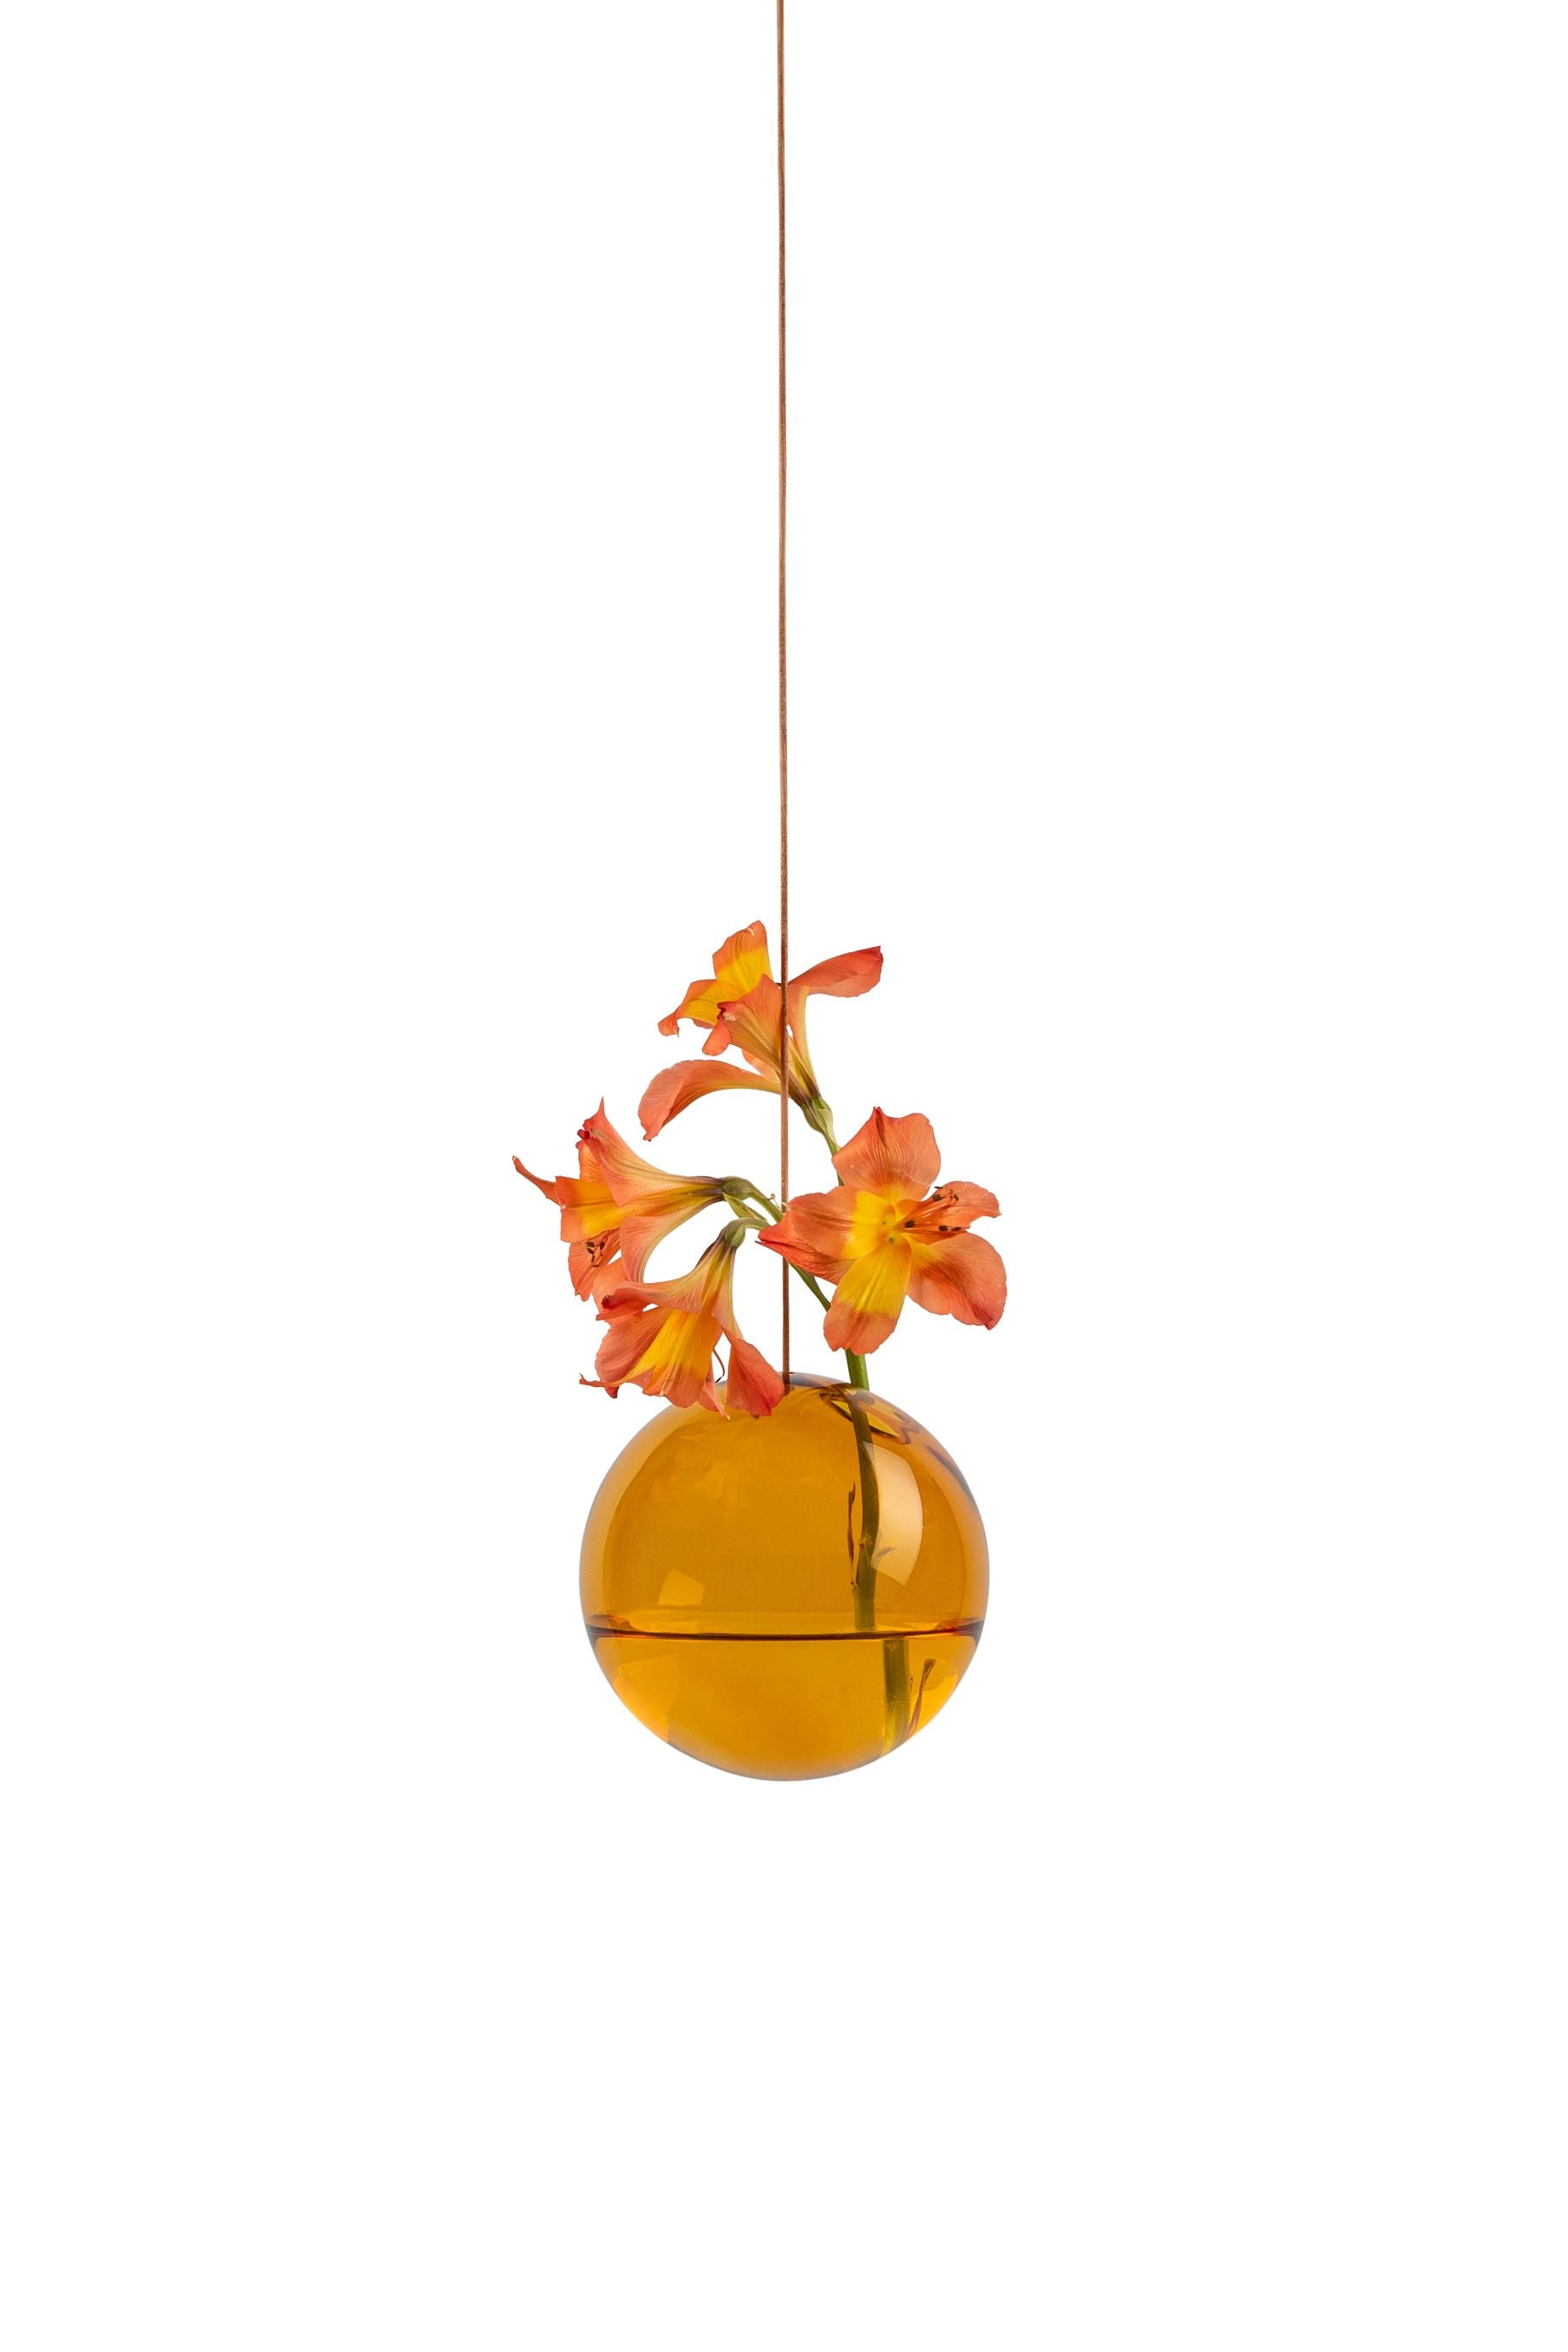 Studio sur la suspension du vase à bulles de fleurs, ambre